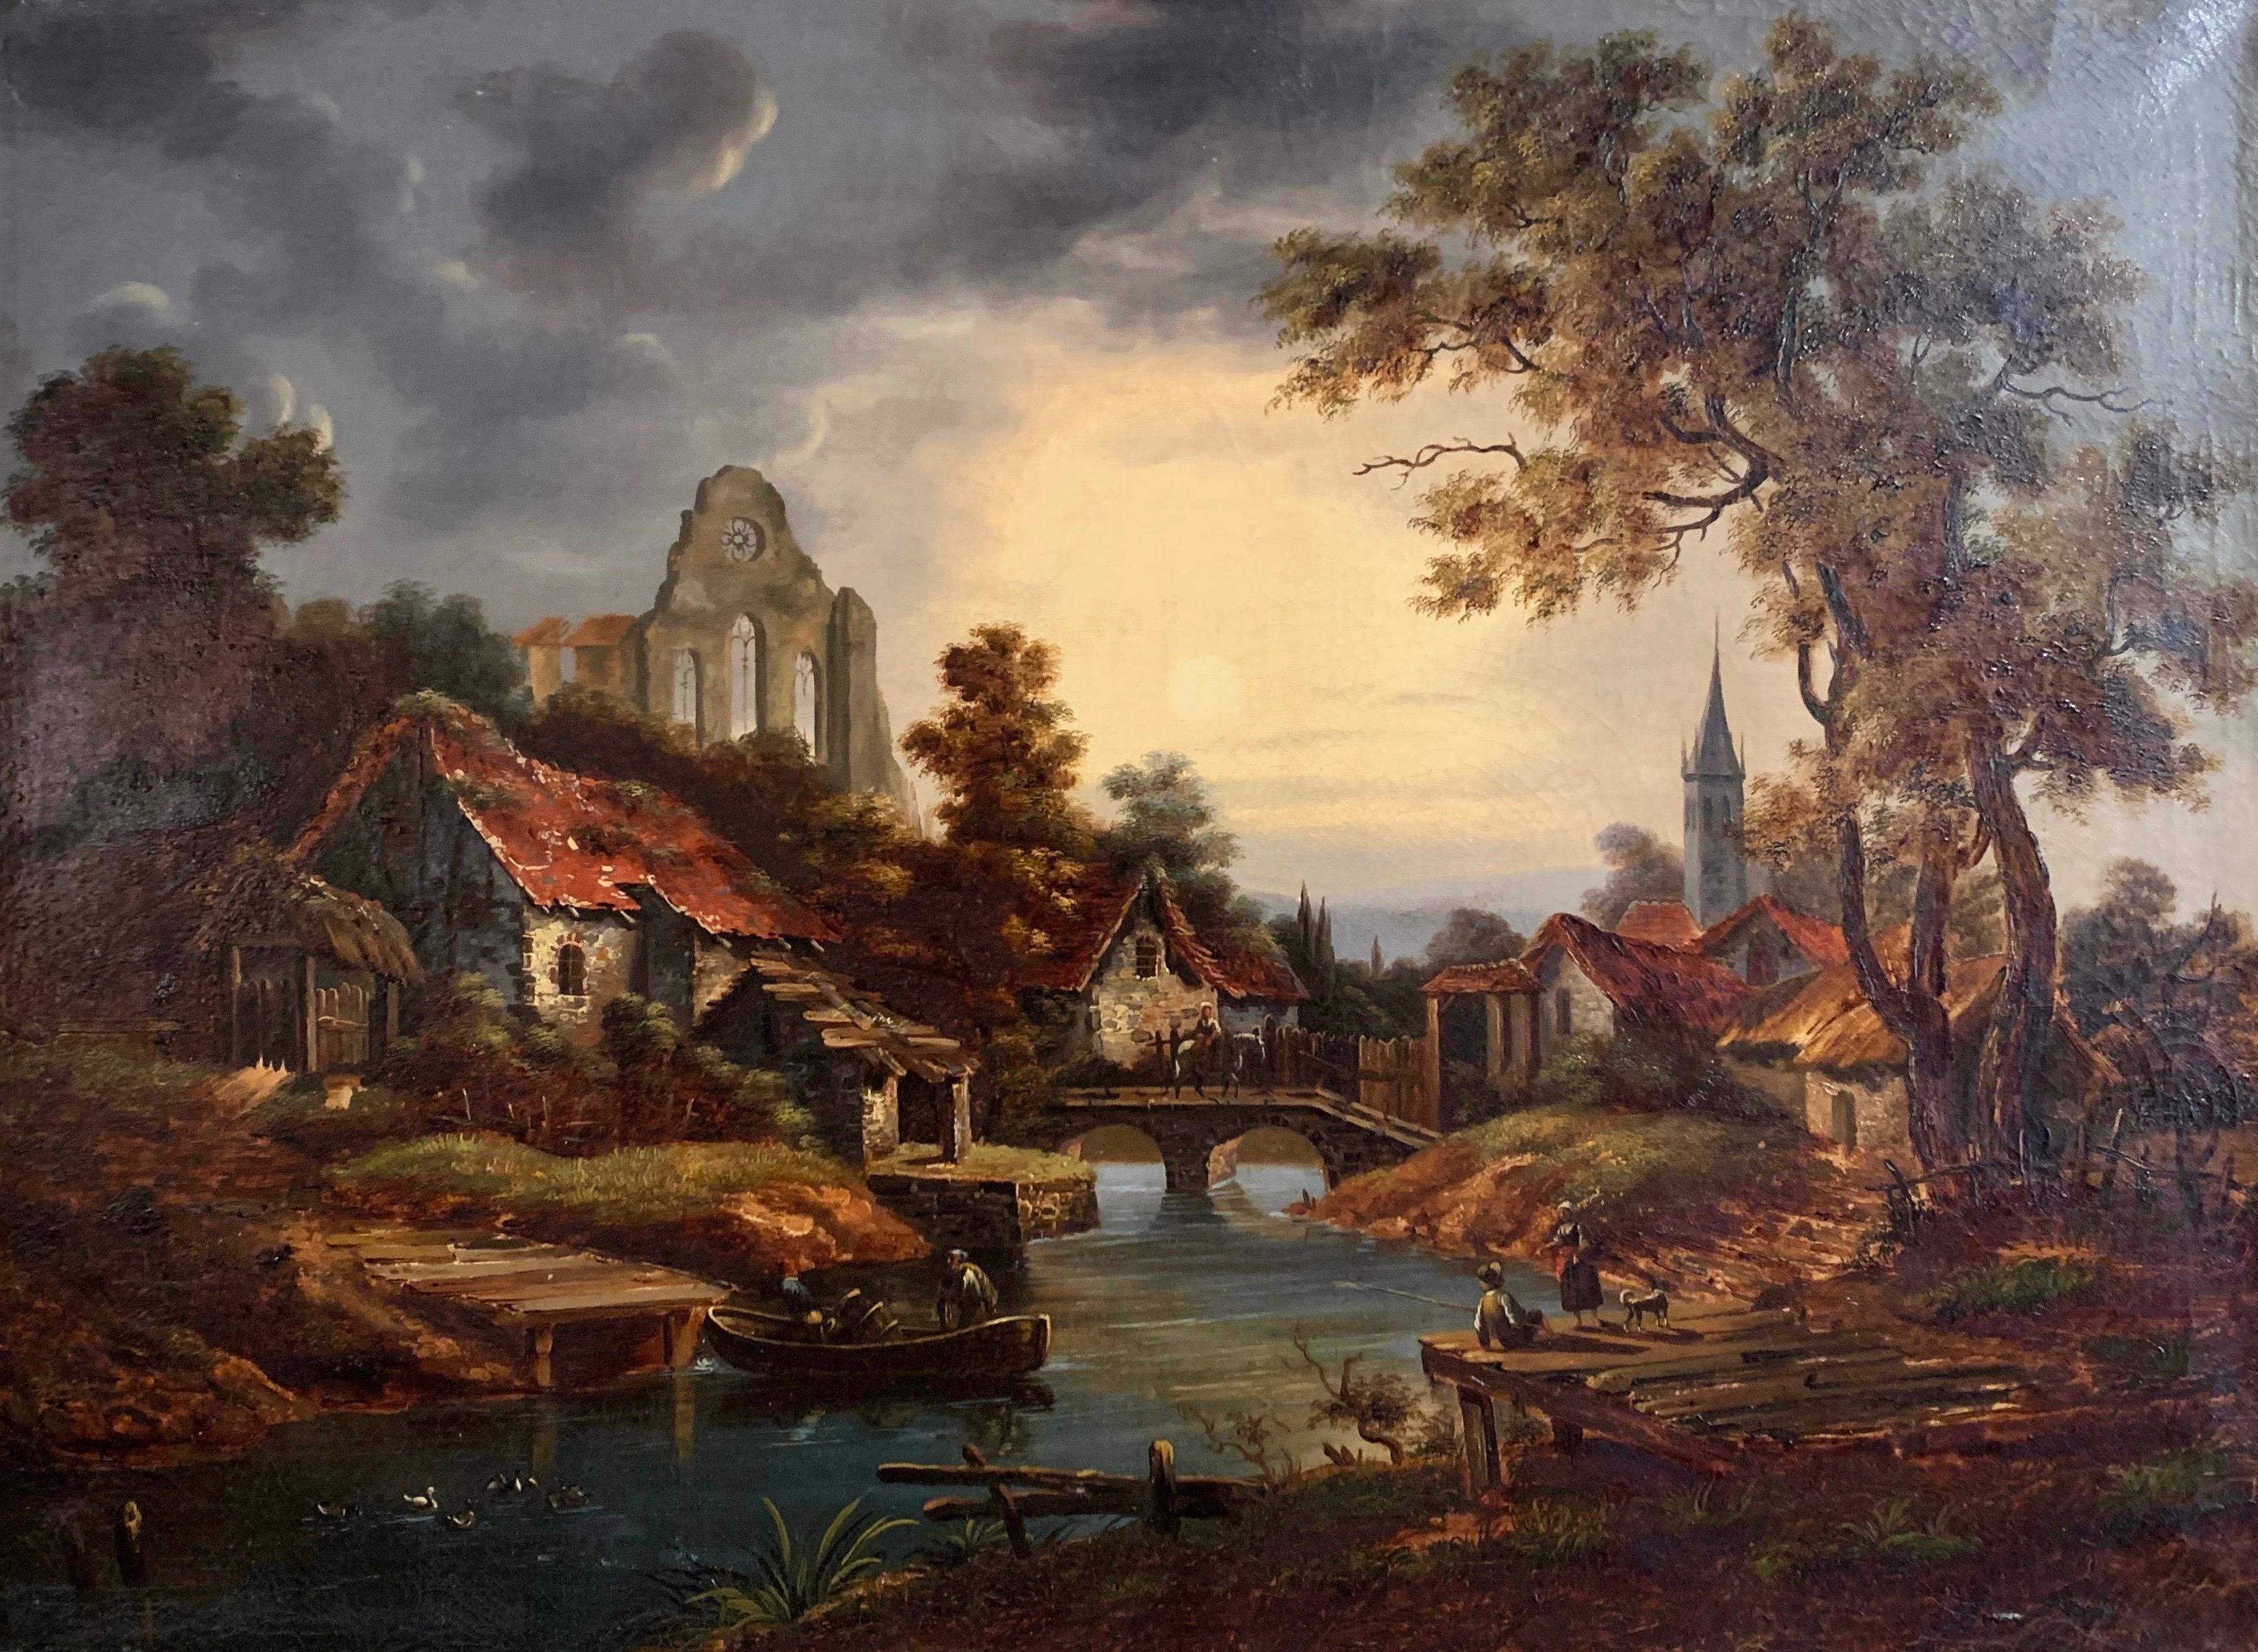 Placé dans son cadre doré sculpté d'origine et peint en France vers 1780, ce tableau ancien représente un village pastoral français typique dans un paysage, avec un étang, des pêcheurs et des fermiers. L'œuvre d'art présente de merveilleux détails,